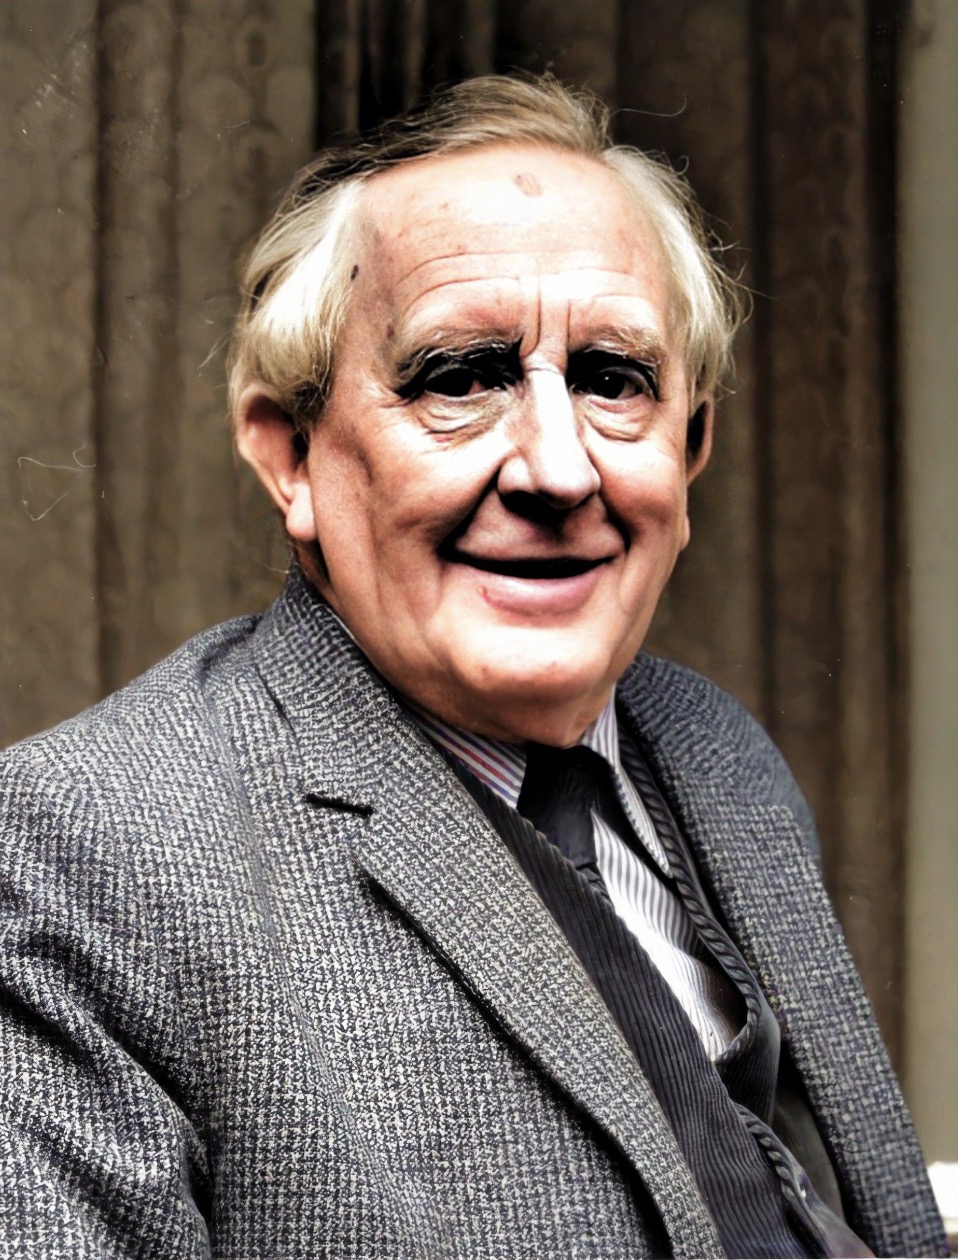 J. R. R. Tolkien smiling portrait